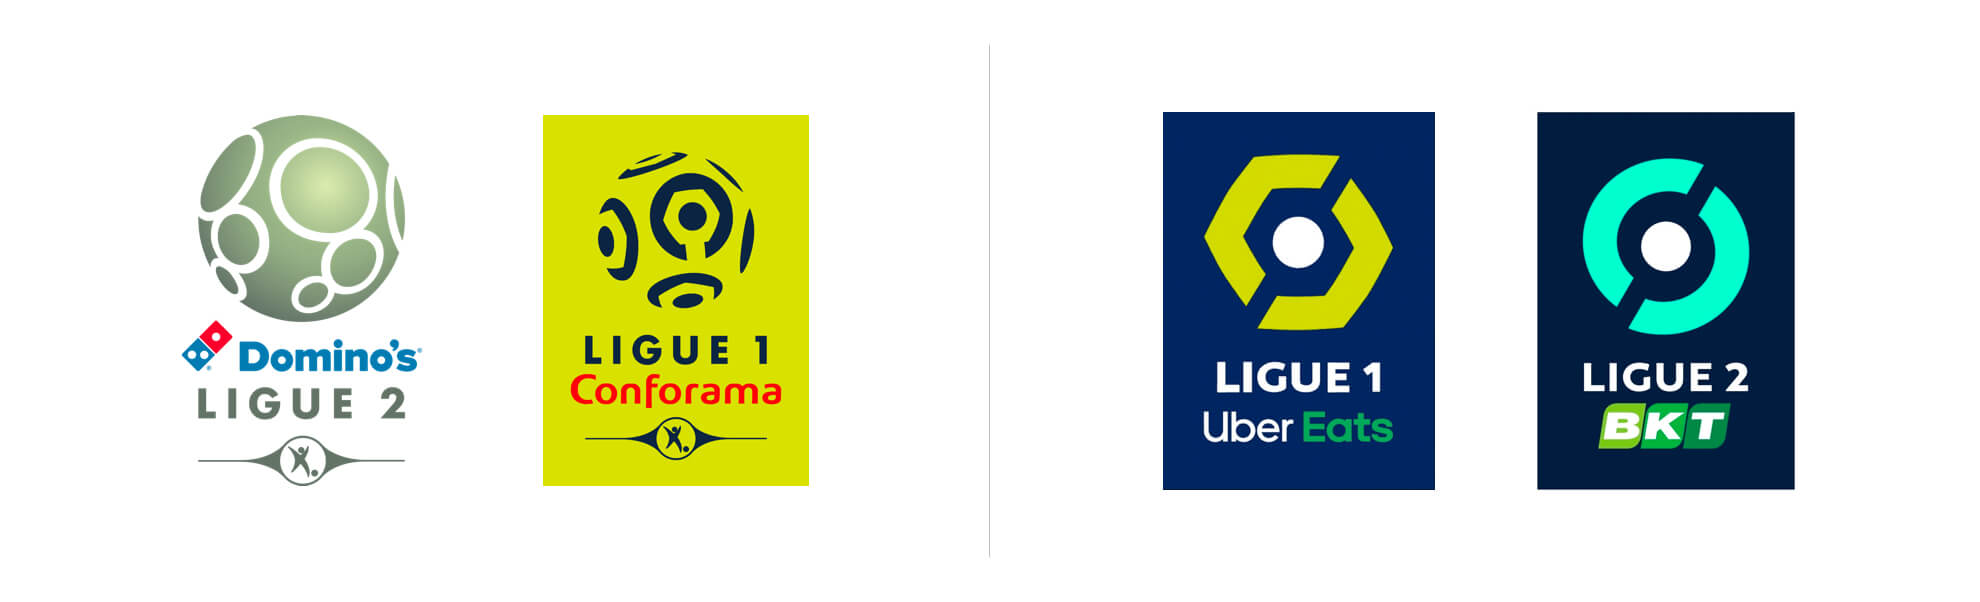 ligue 1 i ligue 2 z nowymi znakami